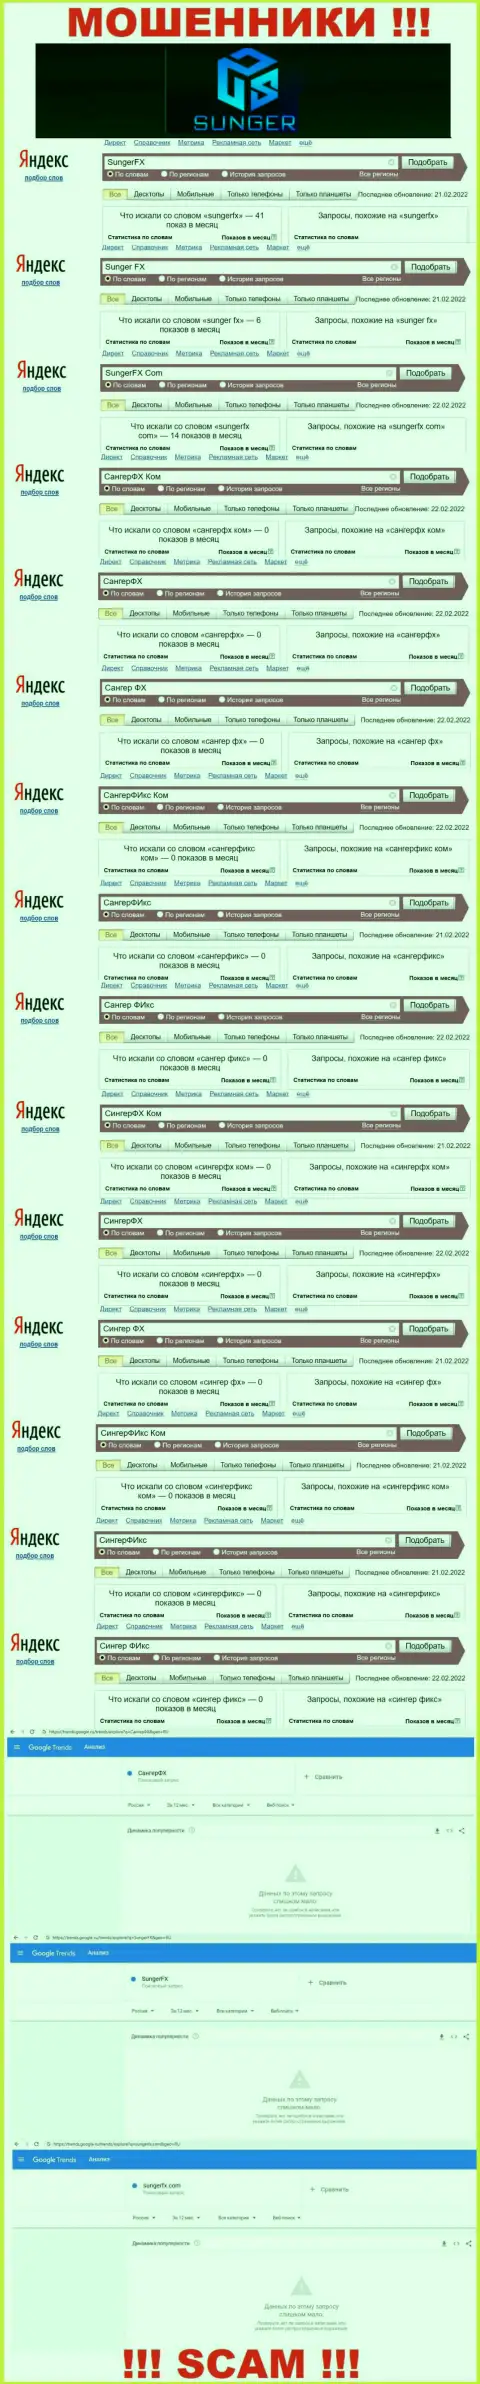 SungerFX - это МОШЕННИКИ, сколько именно раз искали в поисковиках глобальной сети данную шарашкину контору